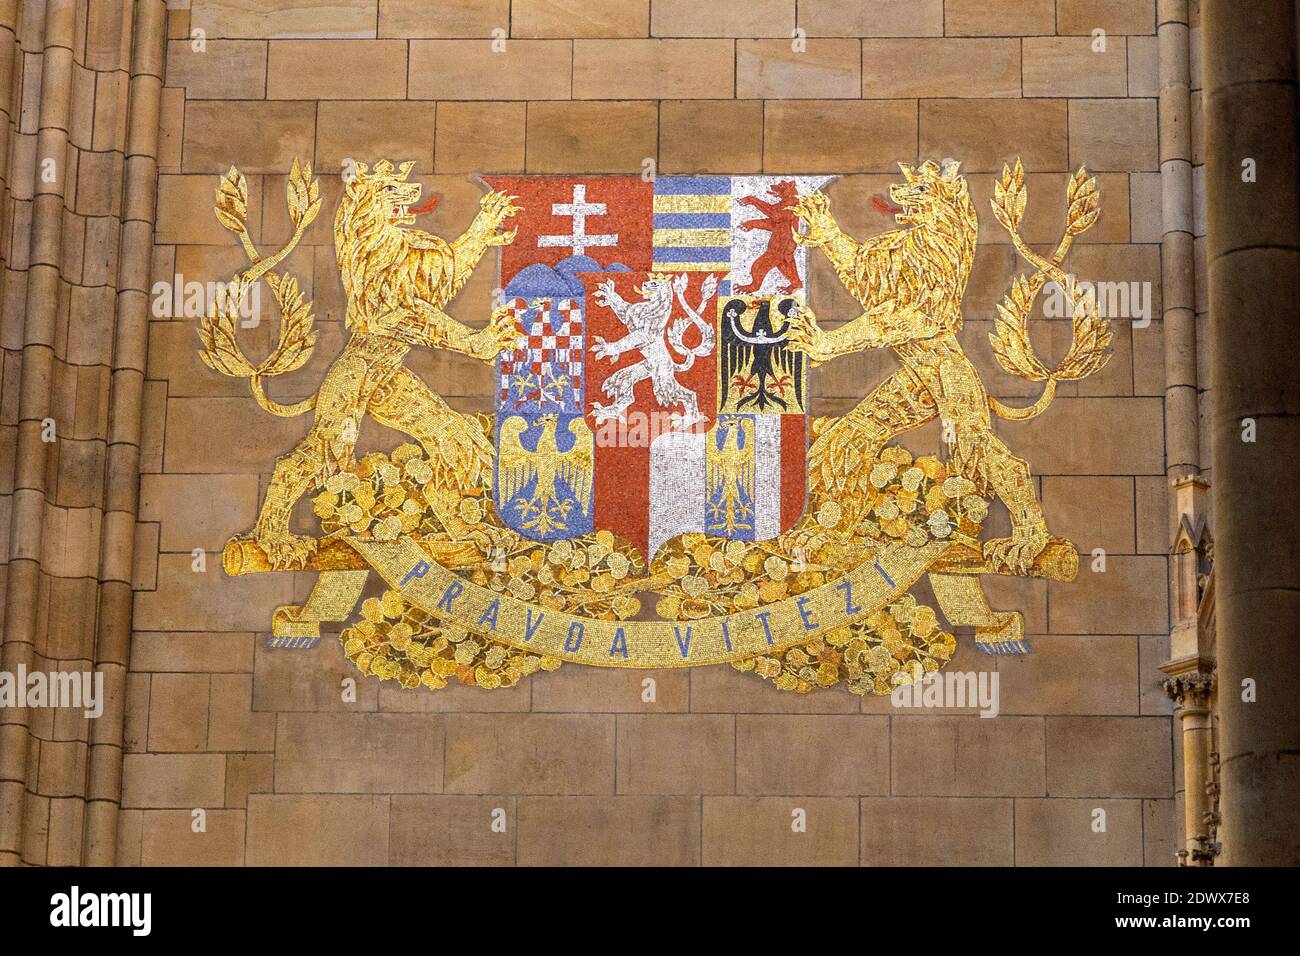 Großes tschechisches Wappen in der Prager Burg, Prag, Tschechien Foto de stock